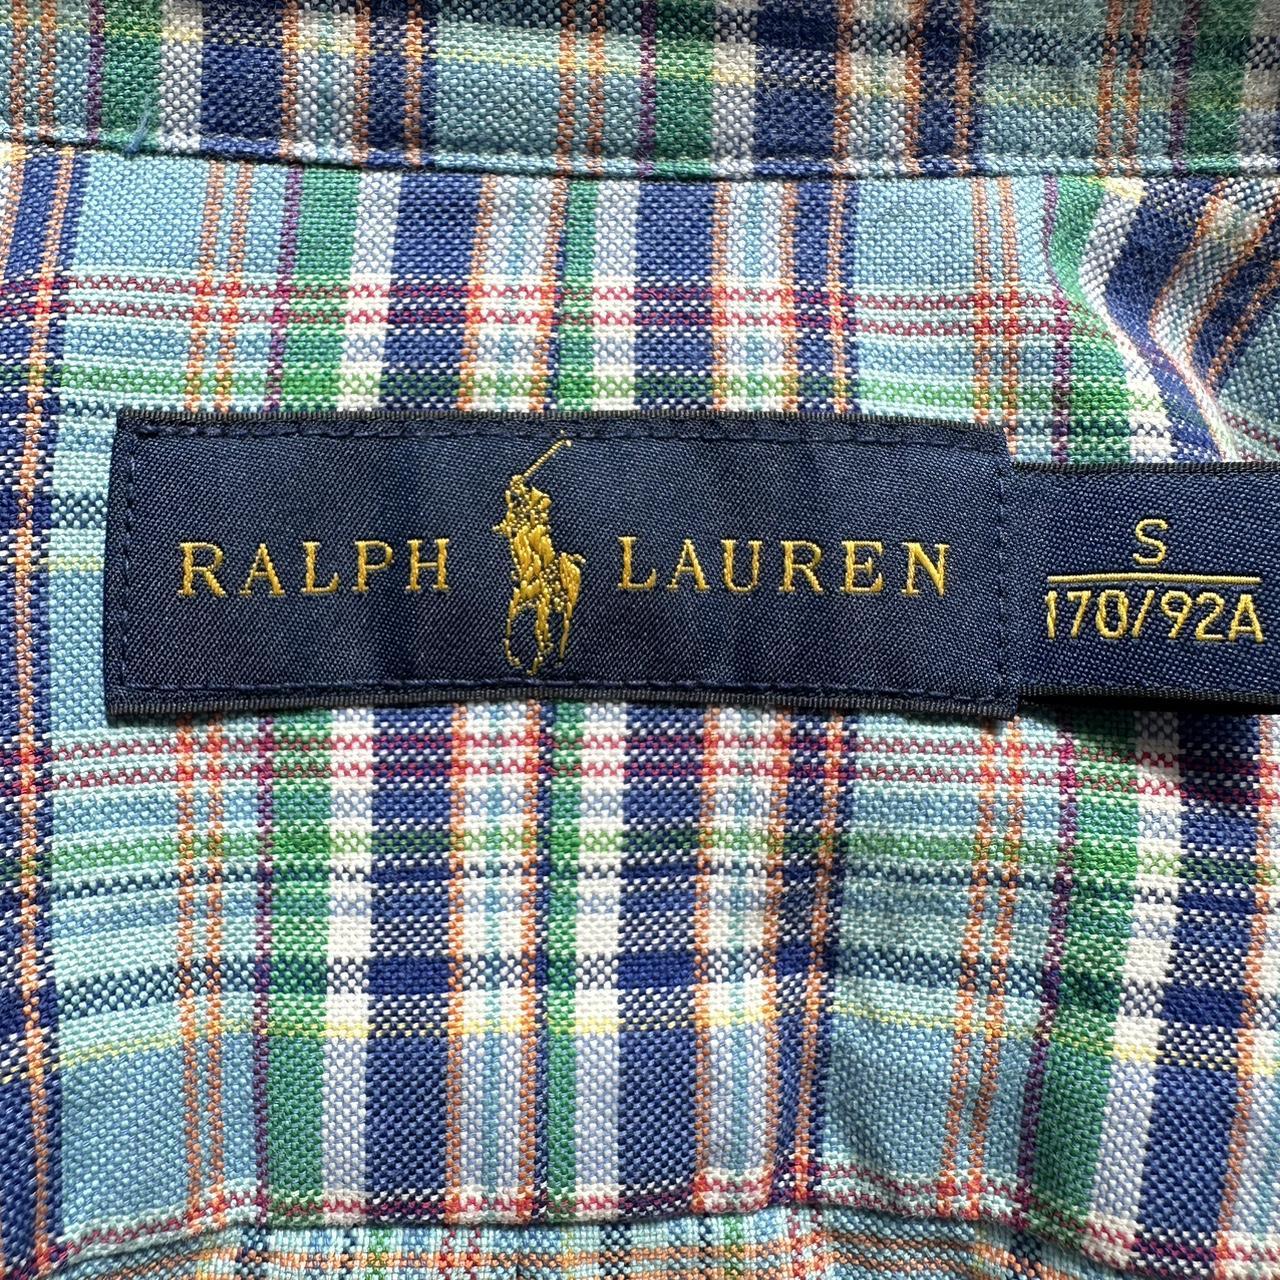 Polo Ralph Lauren mens shirt Size S Pick up... - Depop